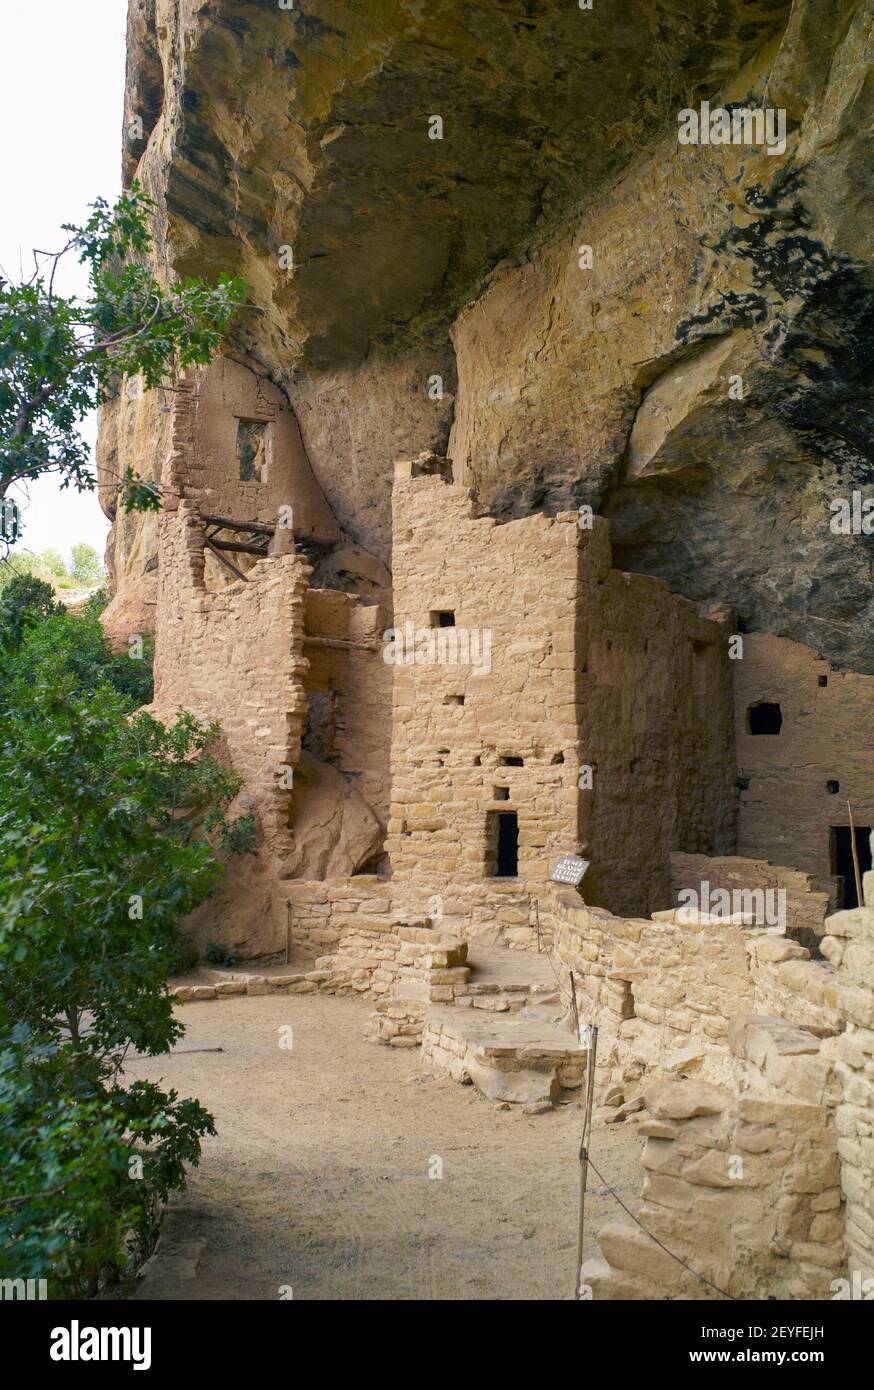 Cliff Palace dans le parc national de Mesa Verde, ruines d'un Pueblo Anasazi, site classé au patrimoine mondial de l'UNESCO, orientation verticale Banque D'Images